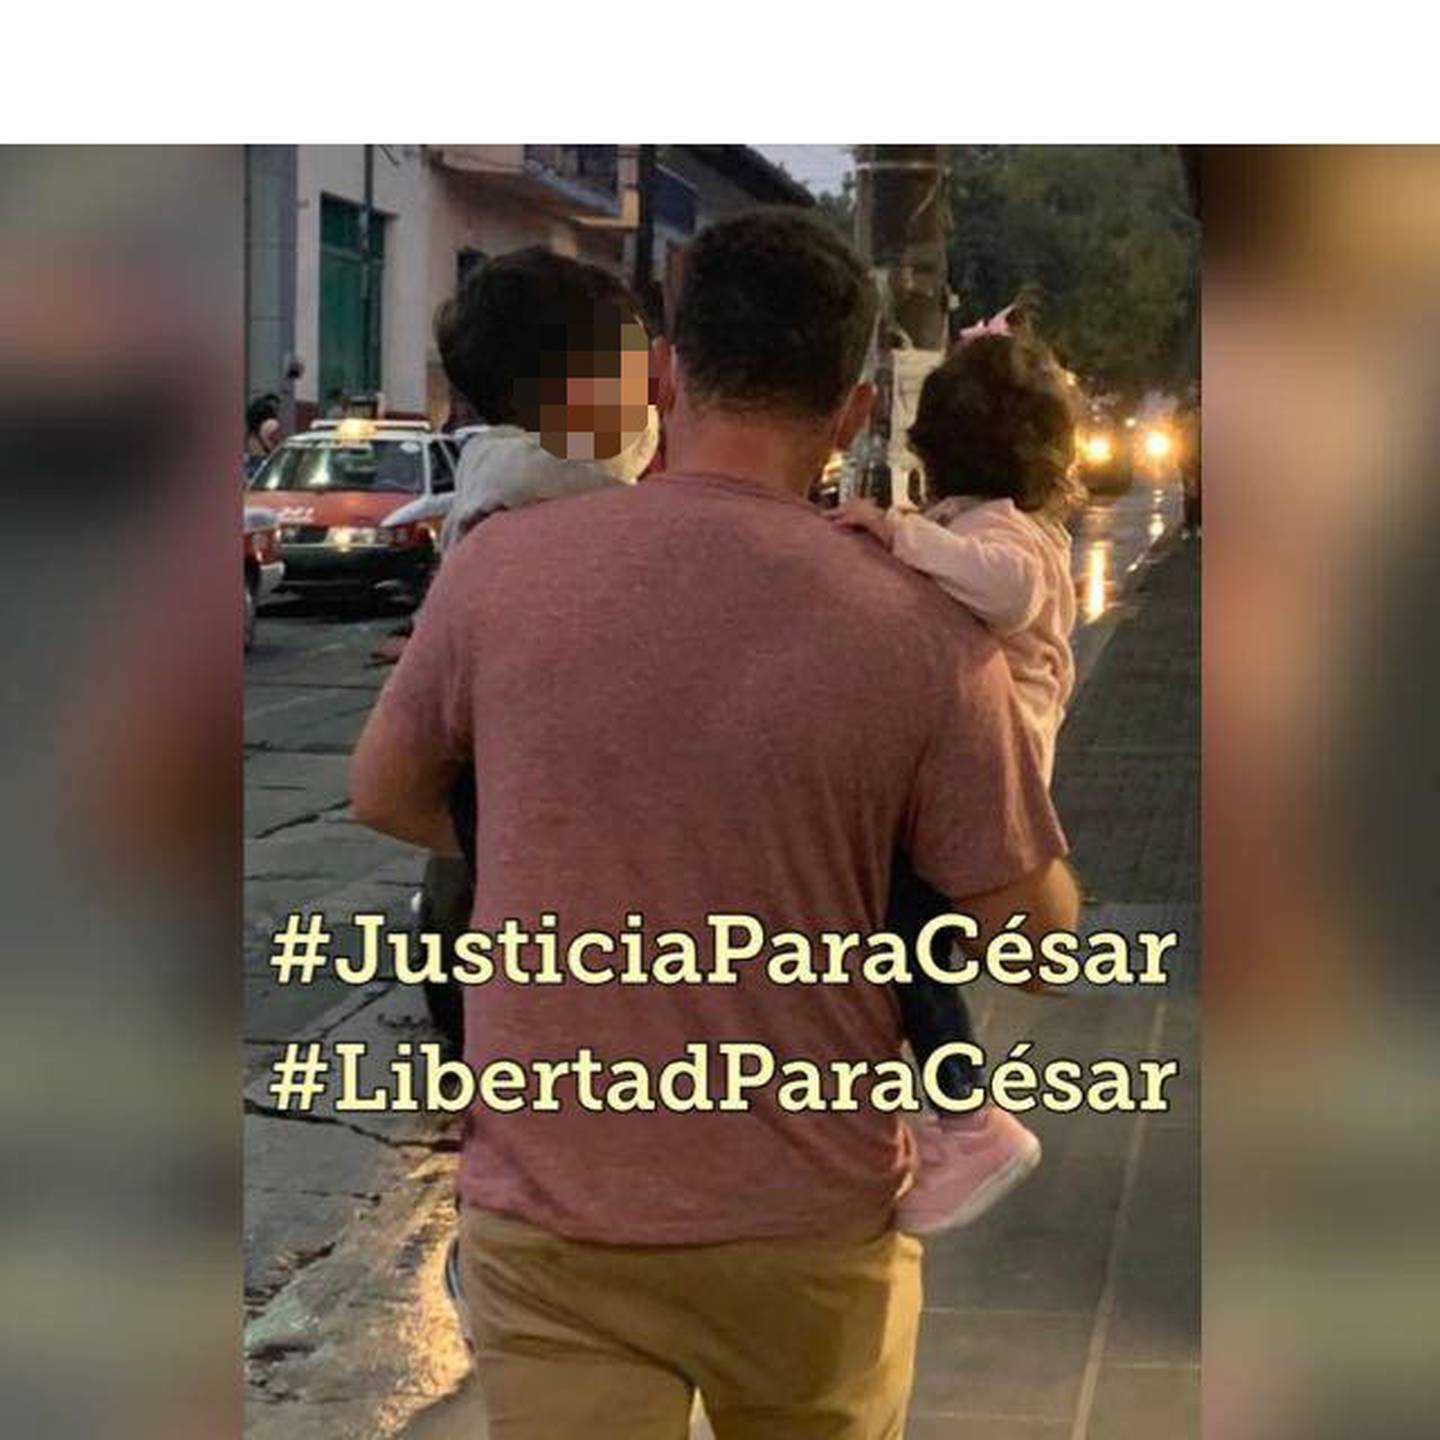 Familiares y seres queridos de César Herrera usan está imagen en redes sociales para exigir su liberación. Foto tomada de Facebook.